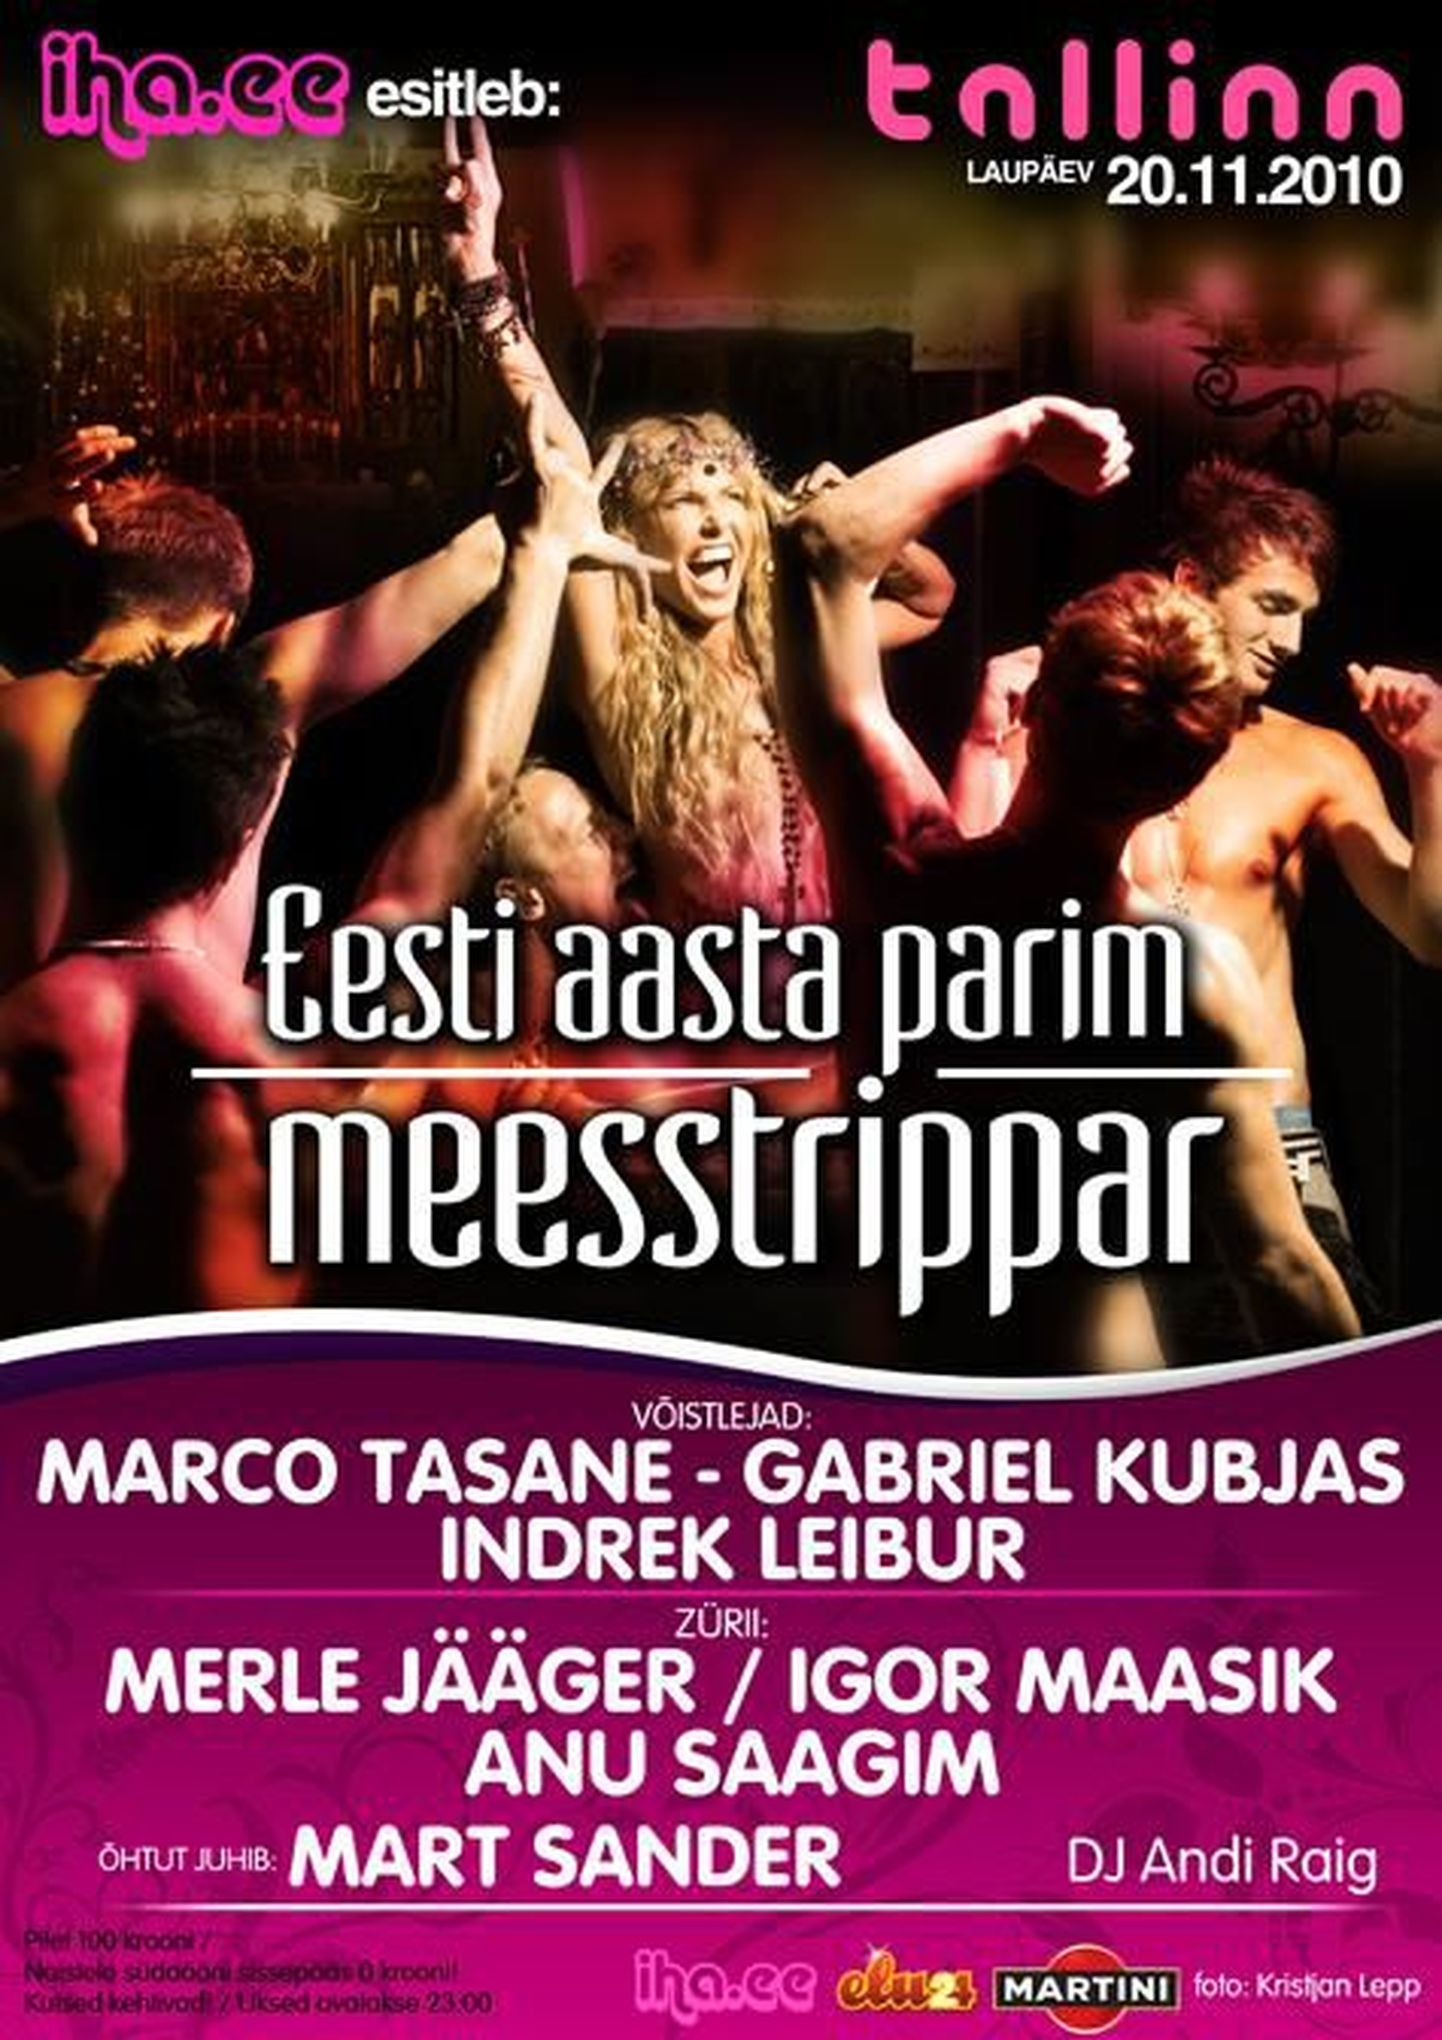 20.novembril toimub Tartus klubis Tallinn Eesti aasta parima meesstrippari selgitamine. Ürituse korraldaja on tutvumisportaal iha.ee